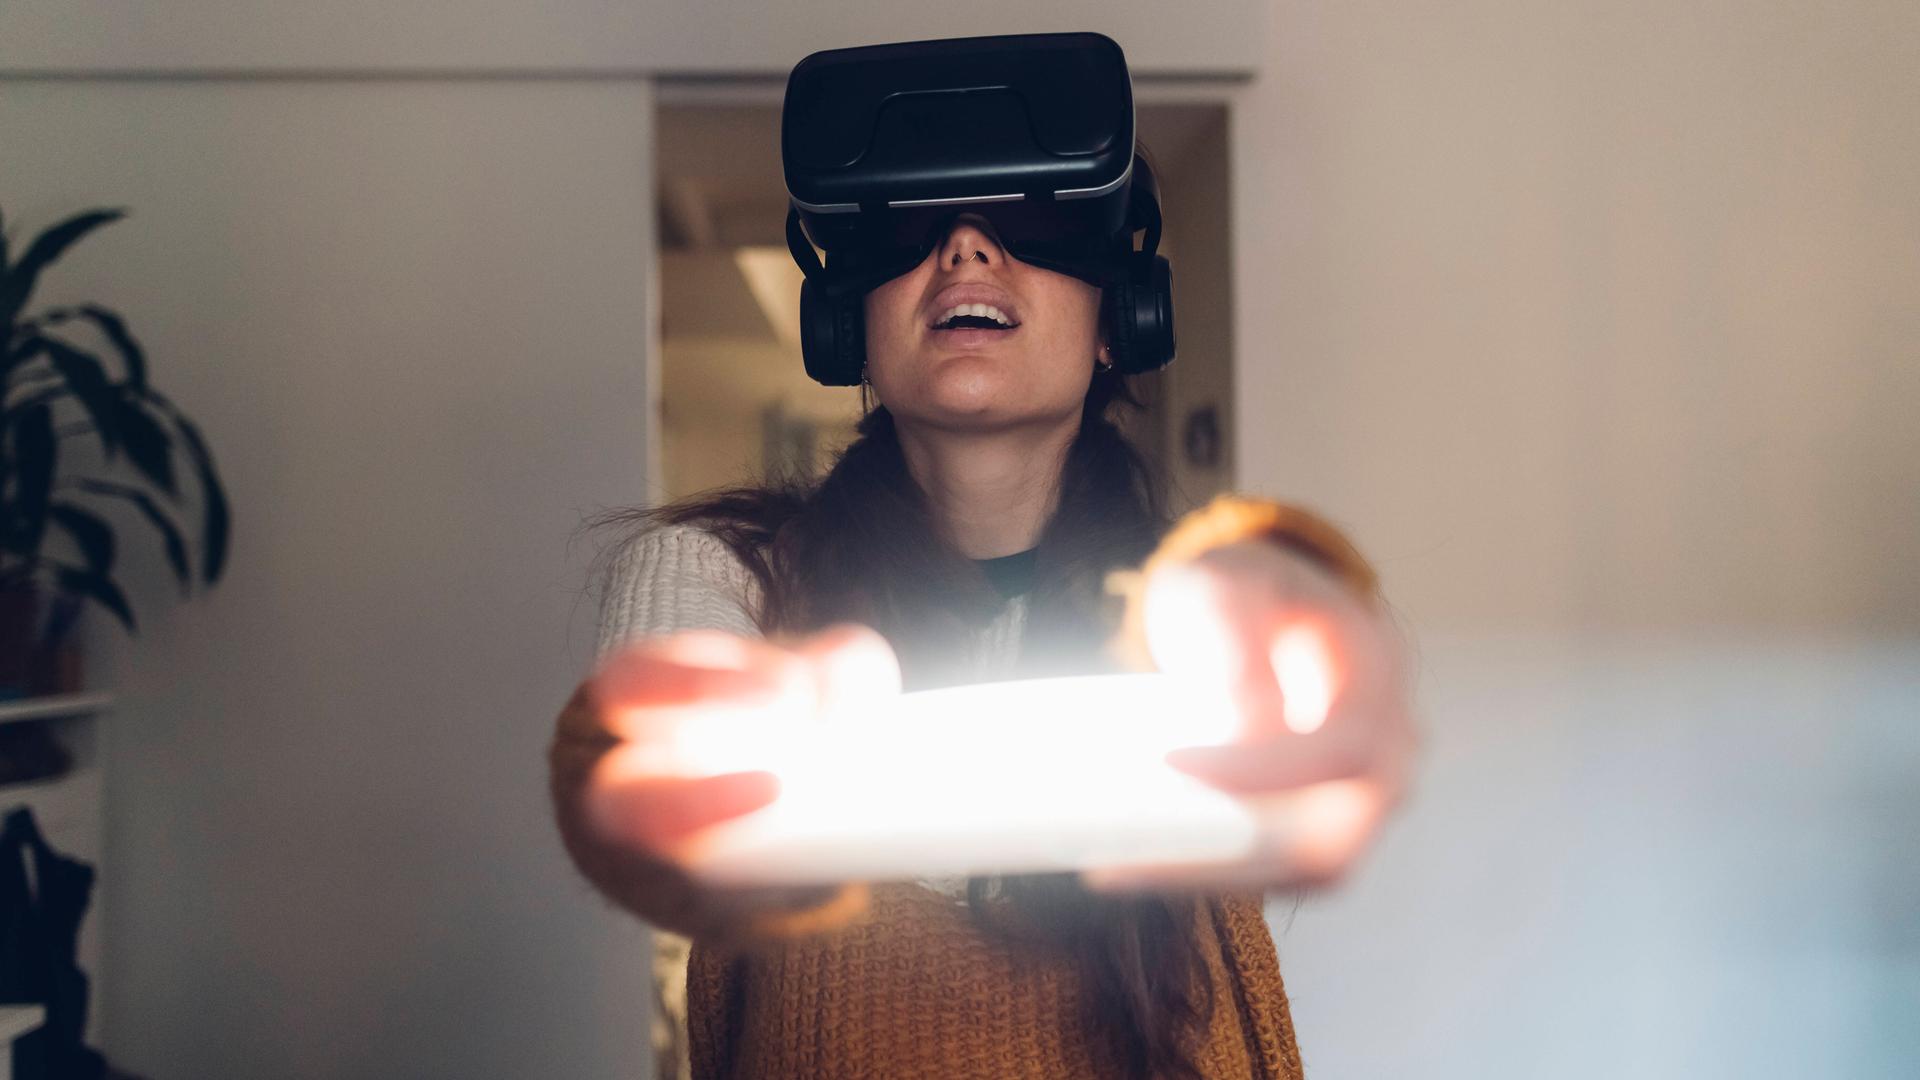 Eine Frau hält eine Virtual Reality Konsole und trägt Kopfhörer.